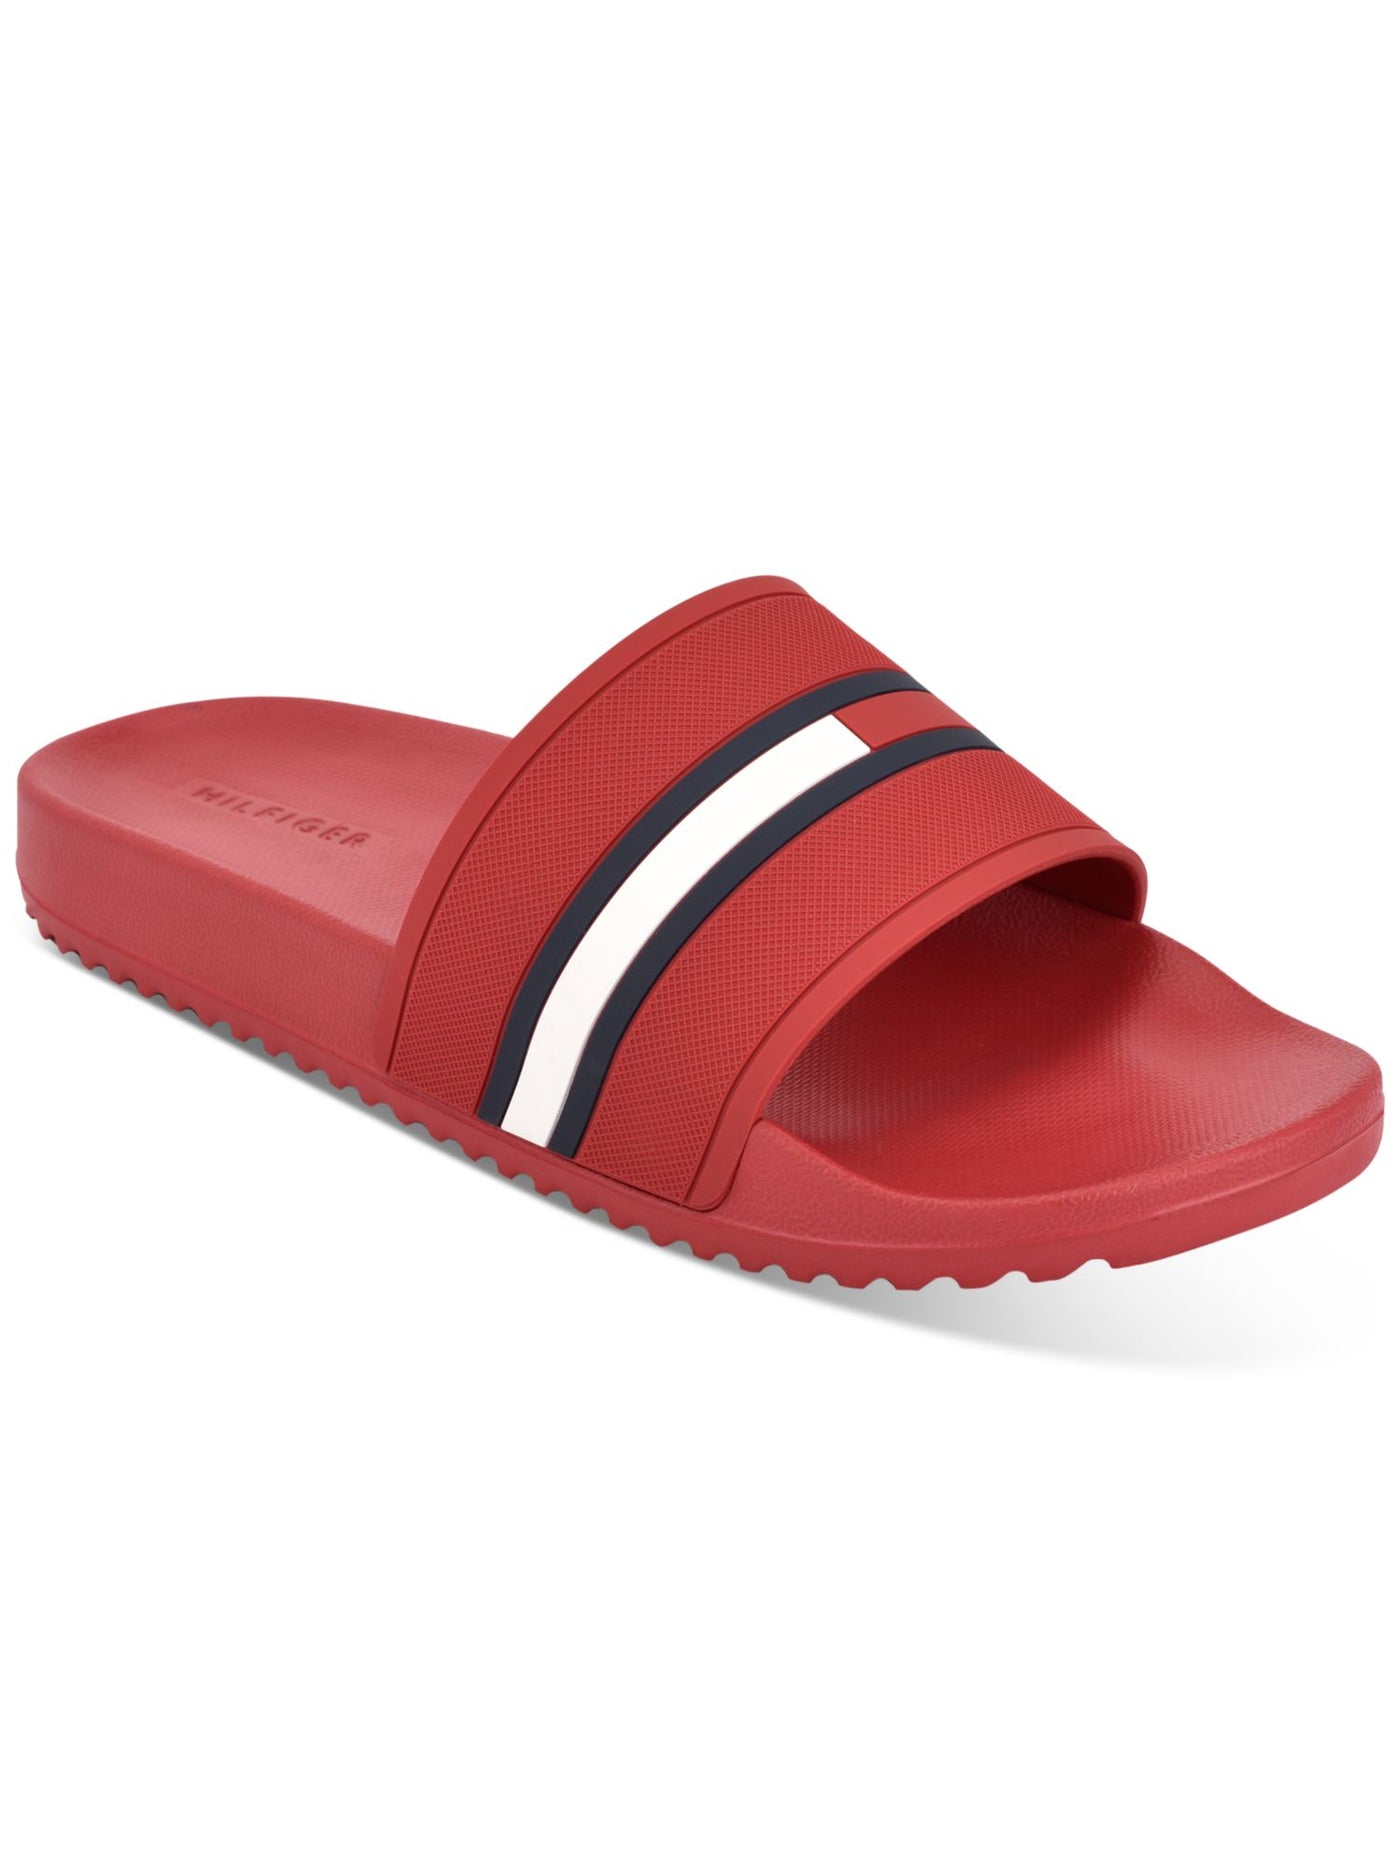 TOMMY HILFIGER Mens Red Comfort Redder Round Toe Slip On Slide Sandals Shoes 13 M